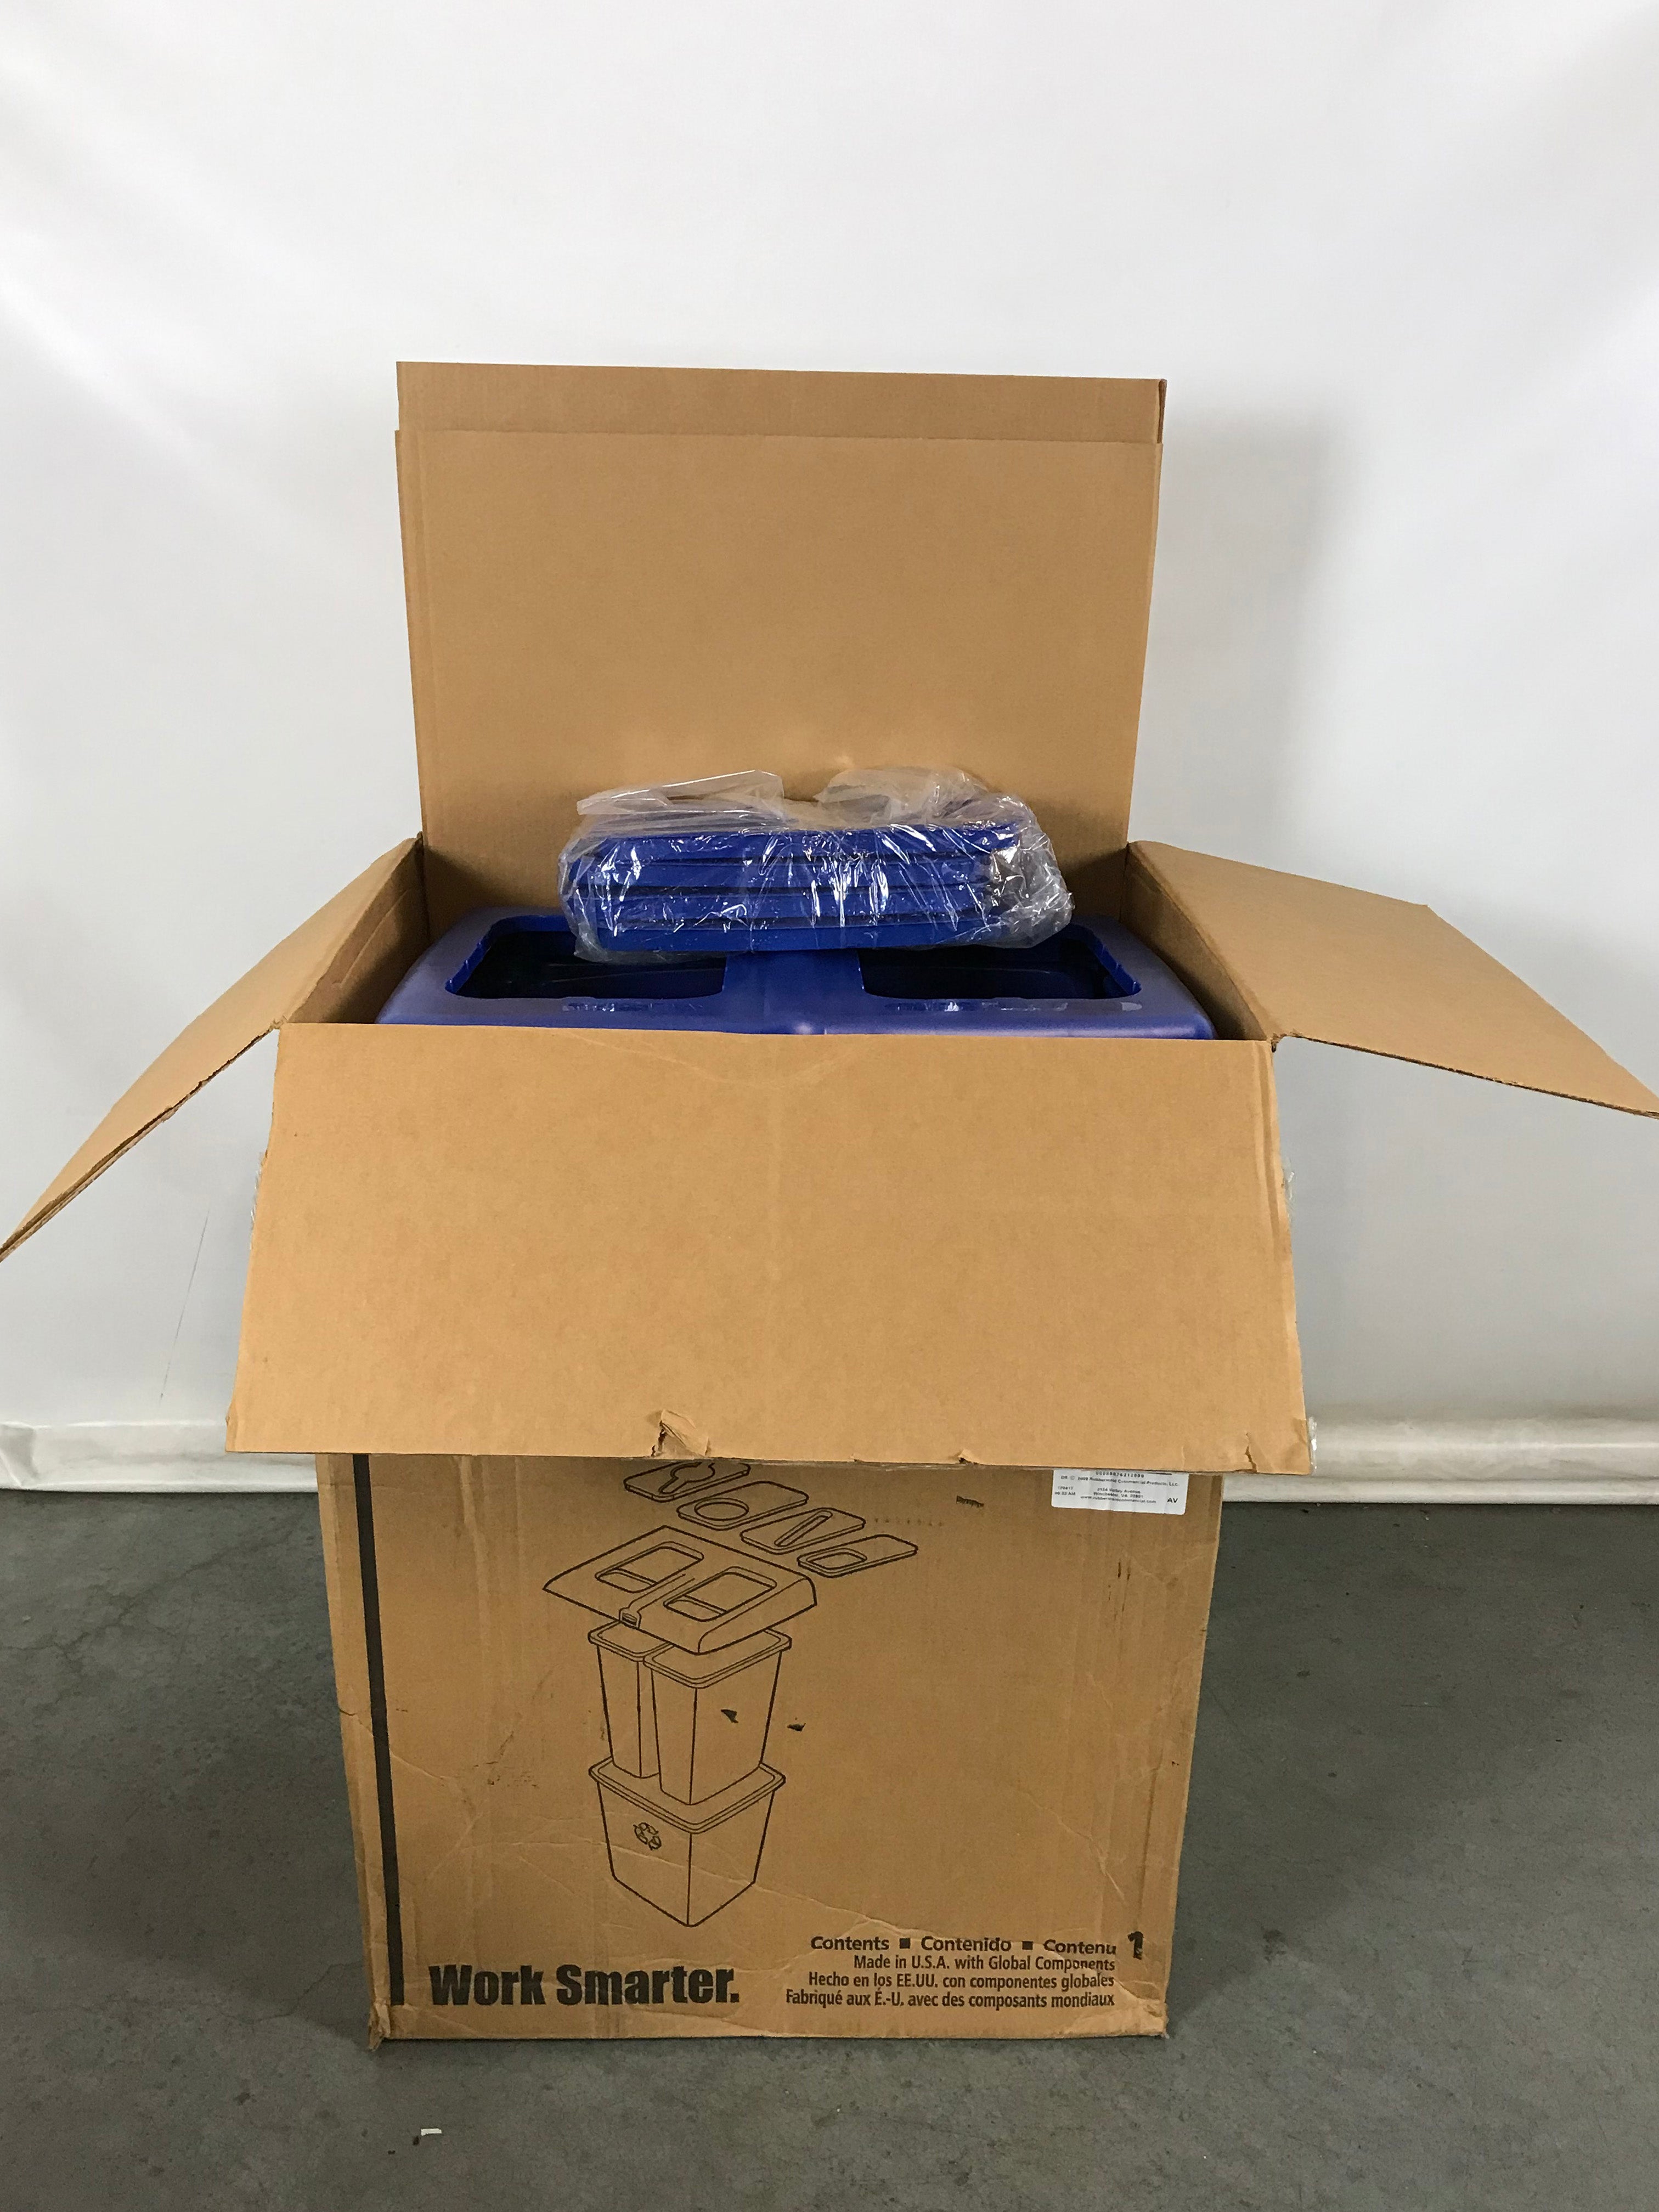 Terro Liquid Ant Bait Kit – MSU Surplus Store